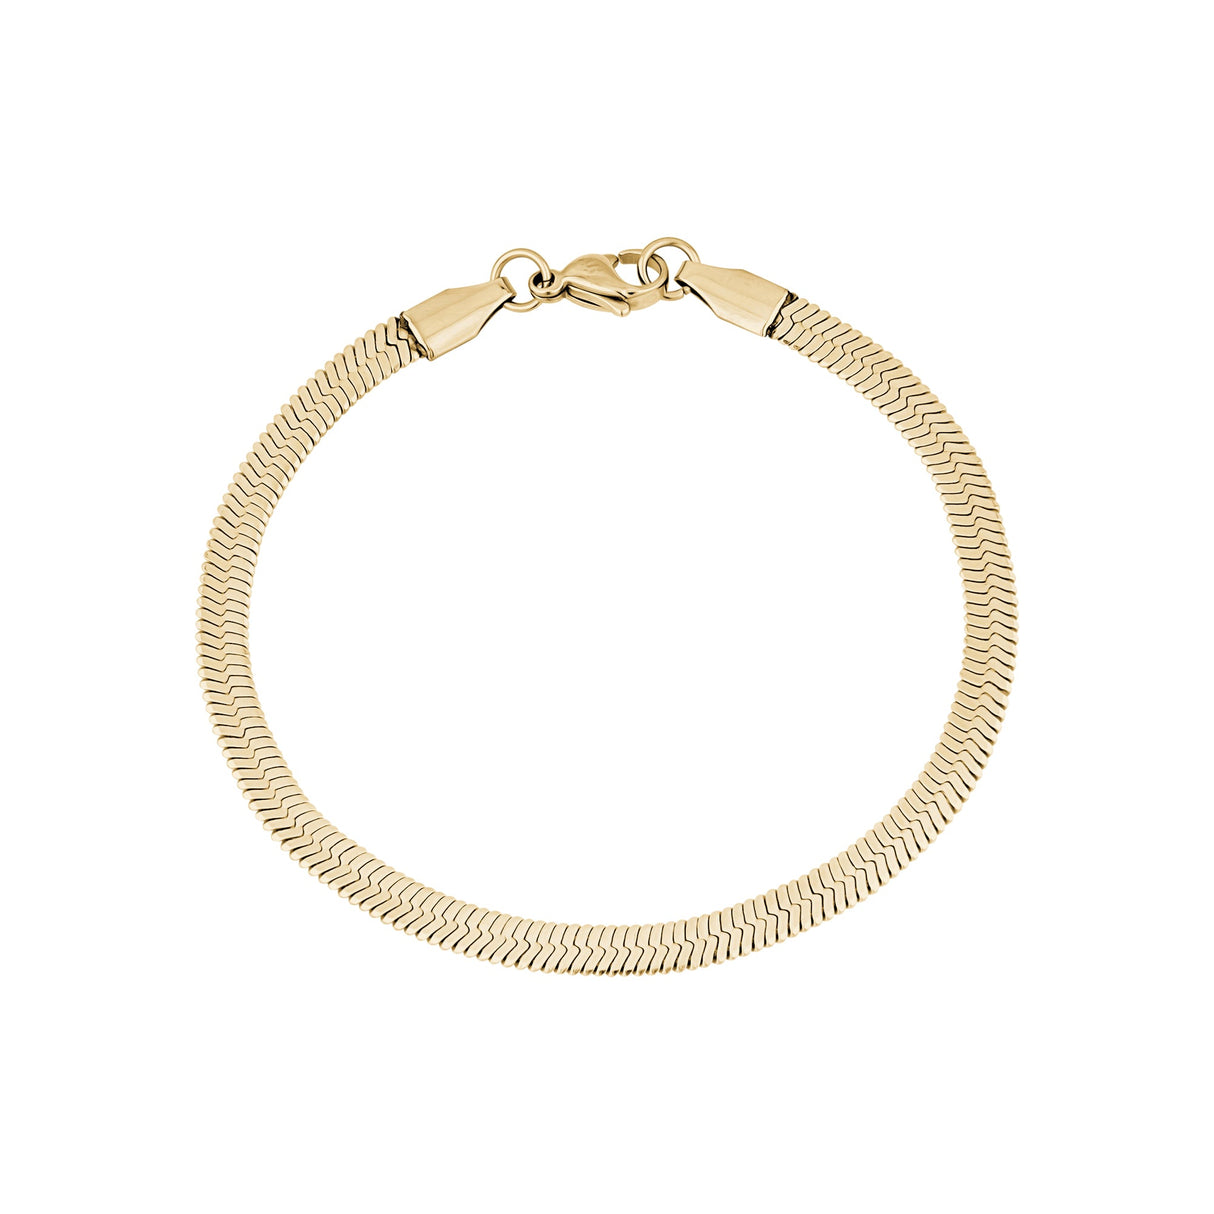 Bracelet pour femme - Bracelet en or à chevrons 4mm